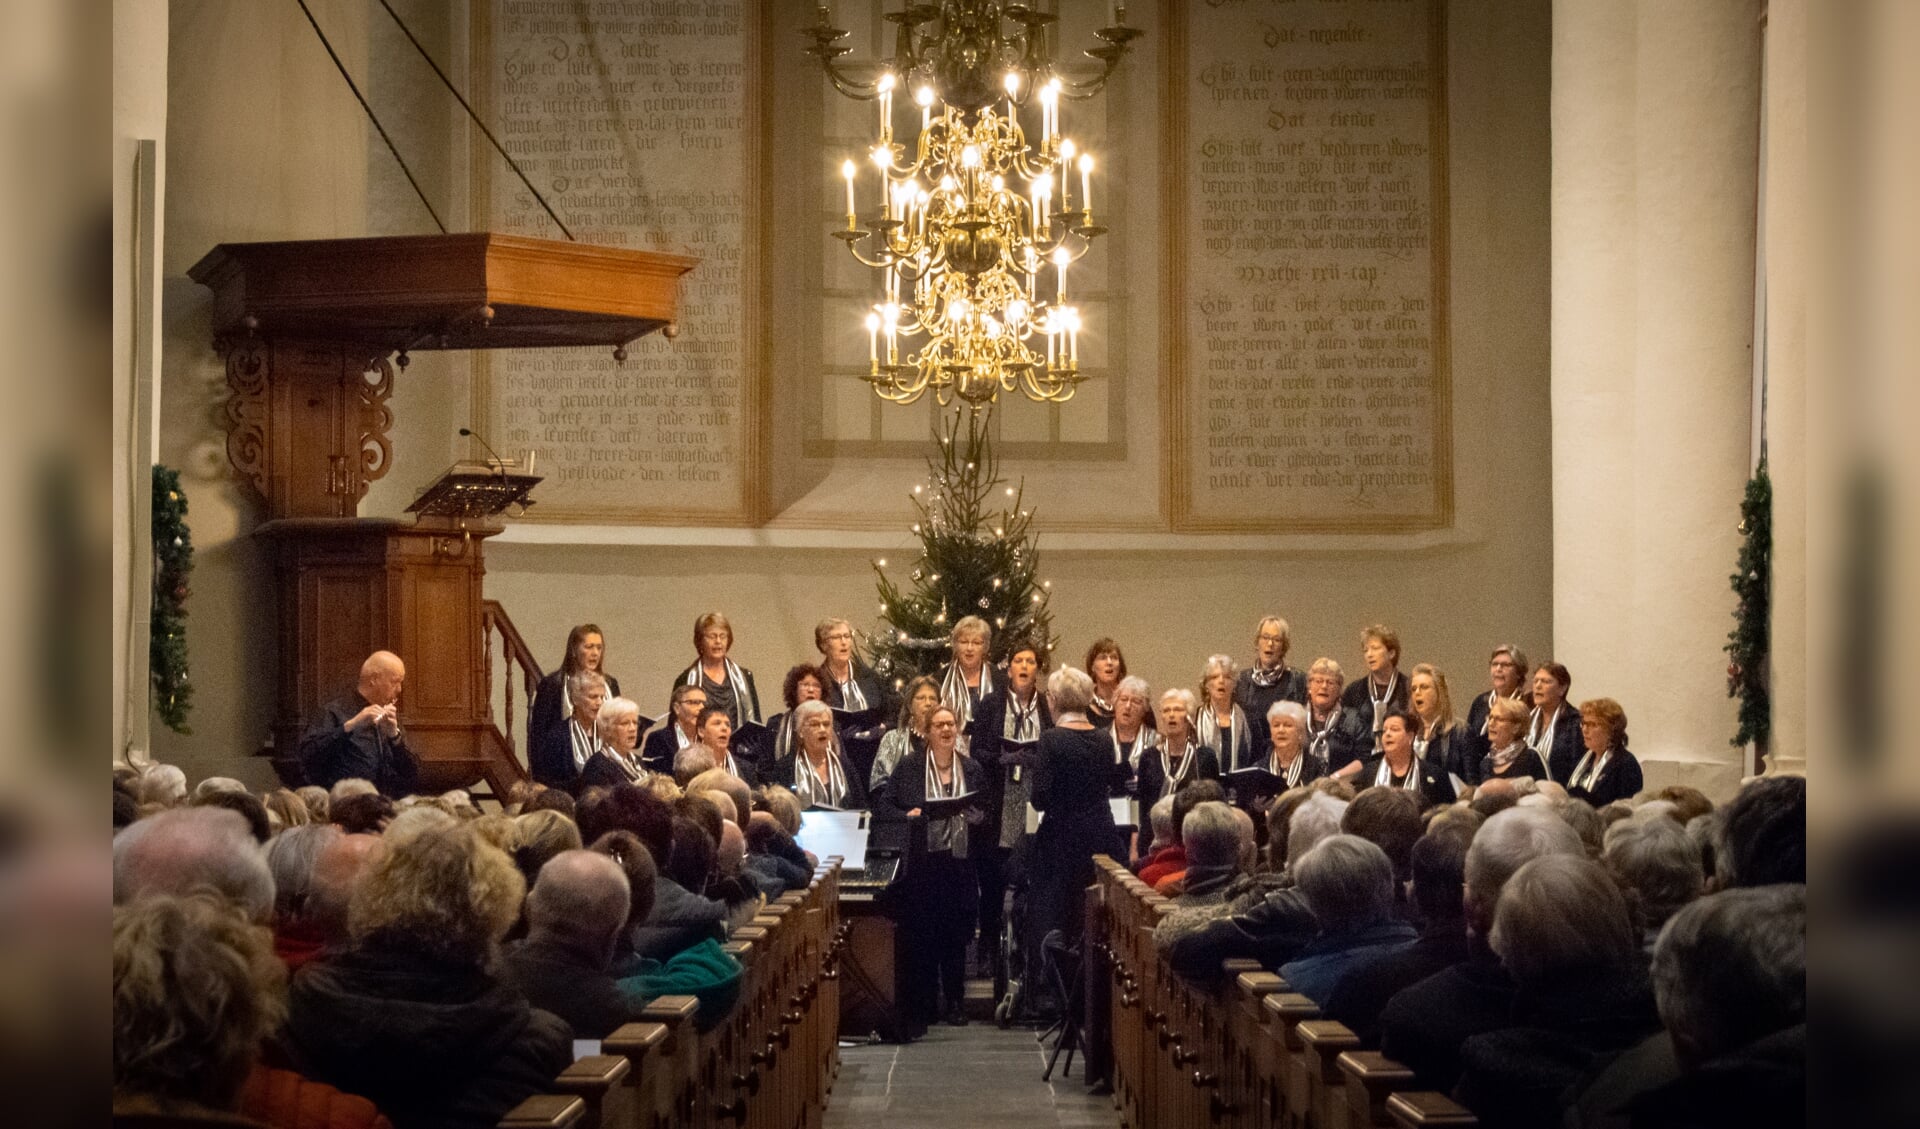 Vrouwkoor Eigen Wijs zingt in de Grote Kerk te Wijk bij Duurstede in 2018